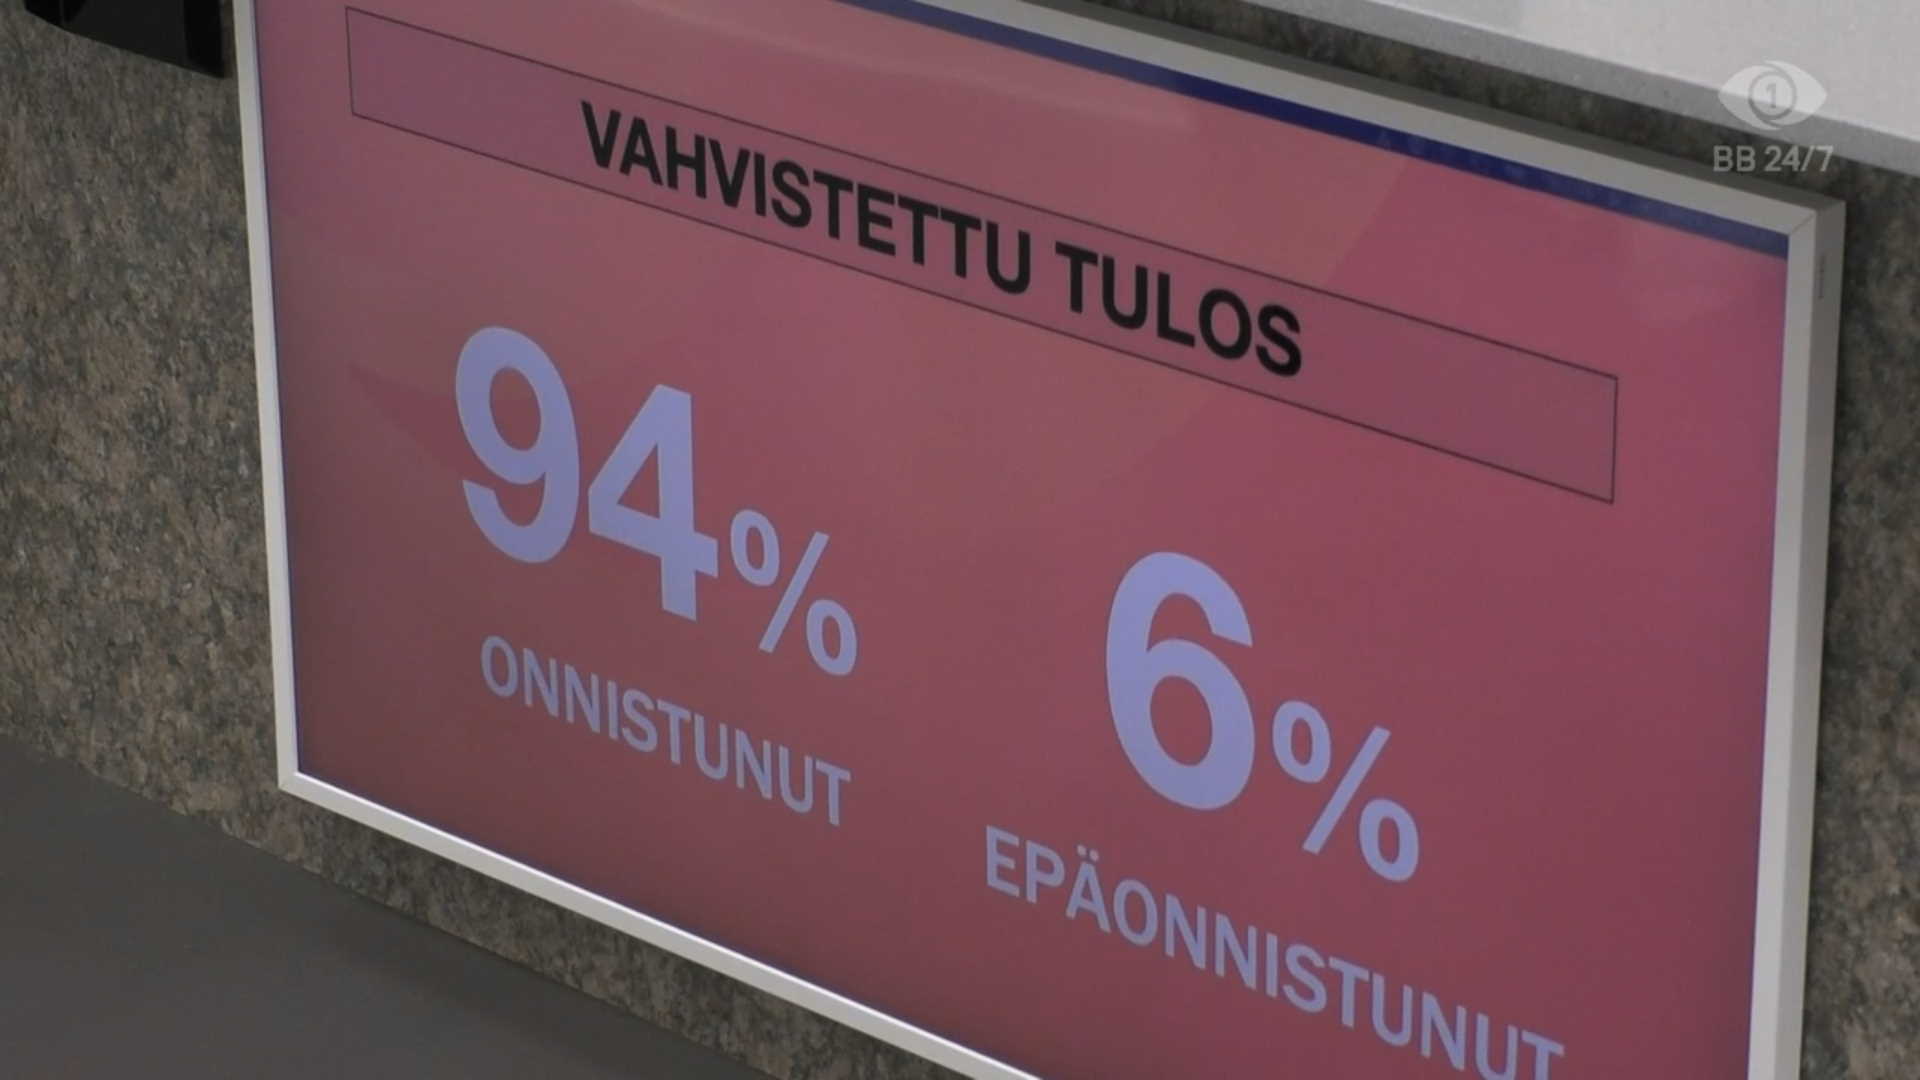 Katsojista 94 % äänesti kauppatehtävän onnistuneeksi. Kuva: © Nelonen Media.